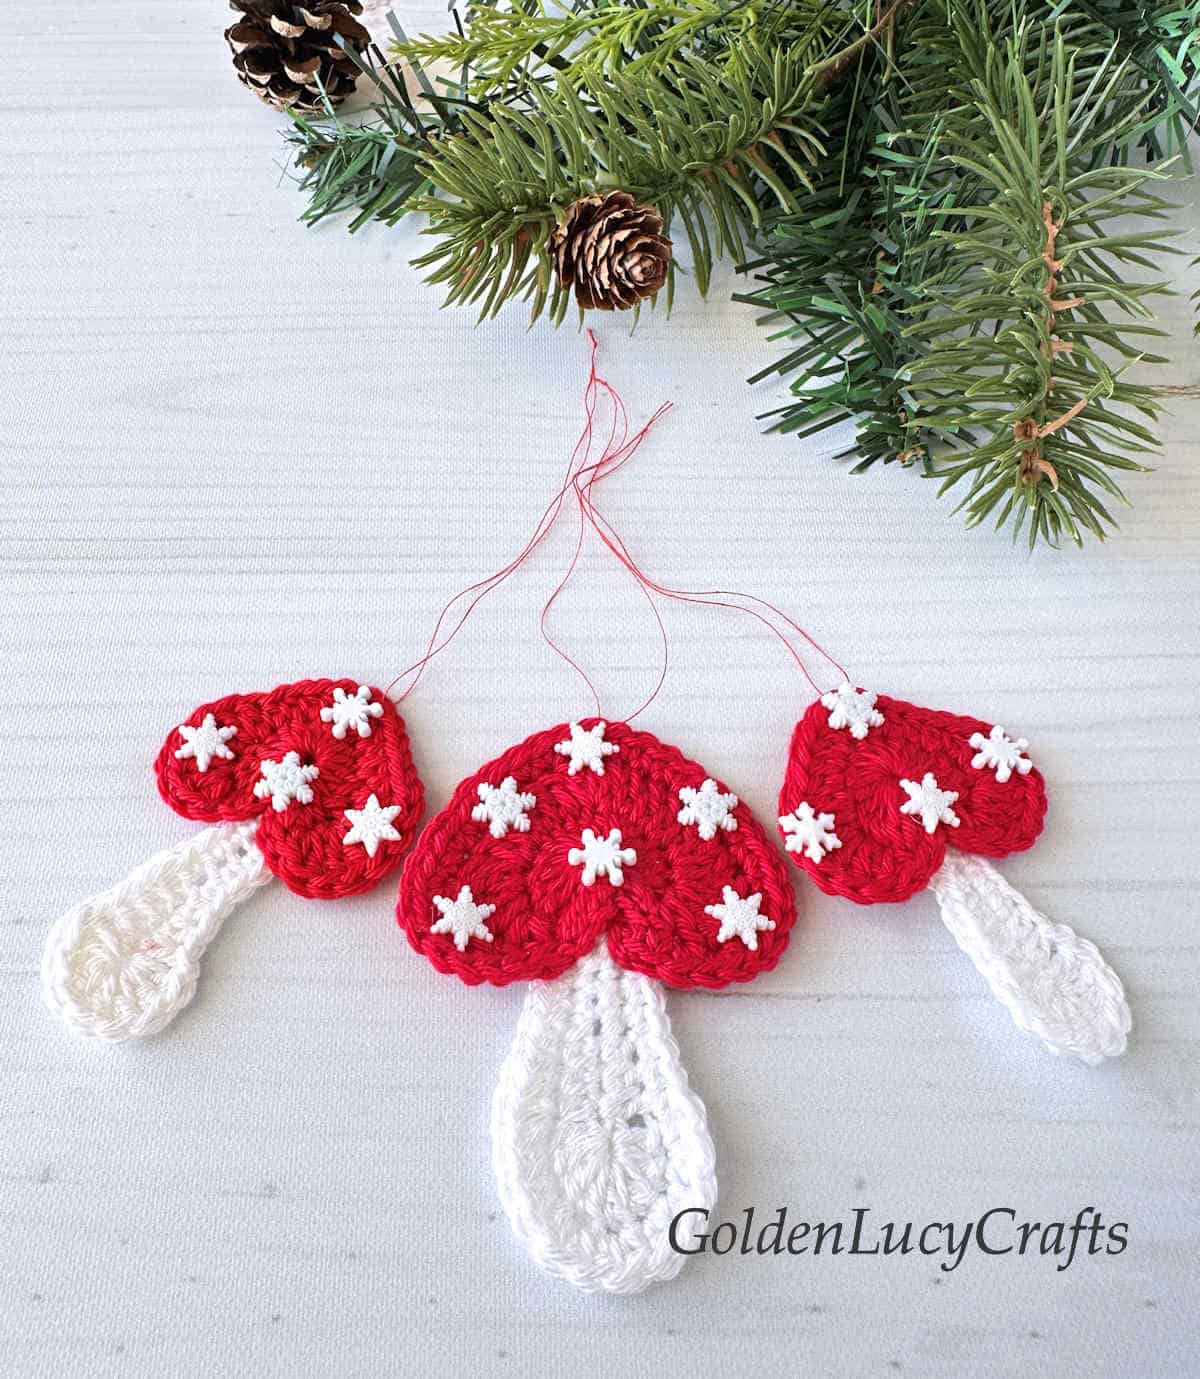 Three crocheted mushroom Christmas ornaments.